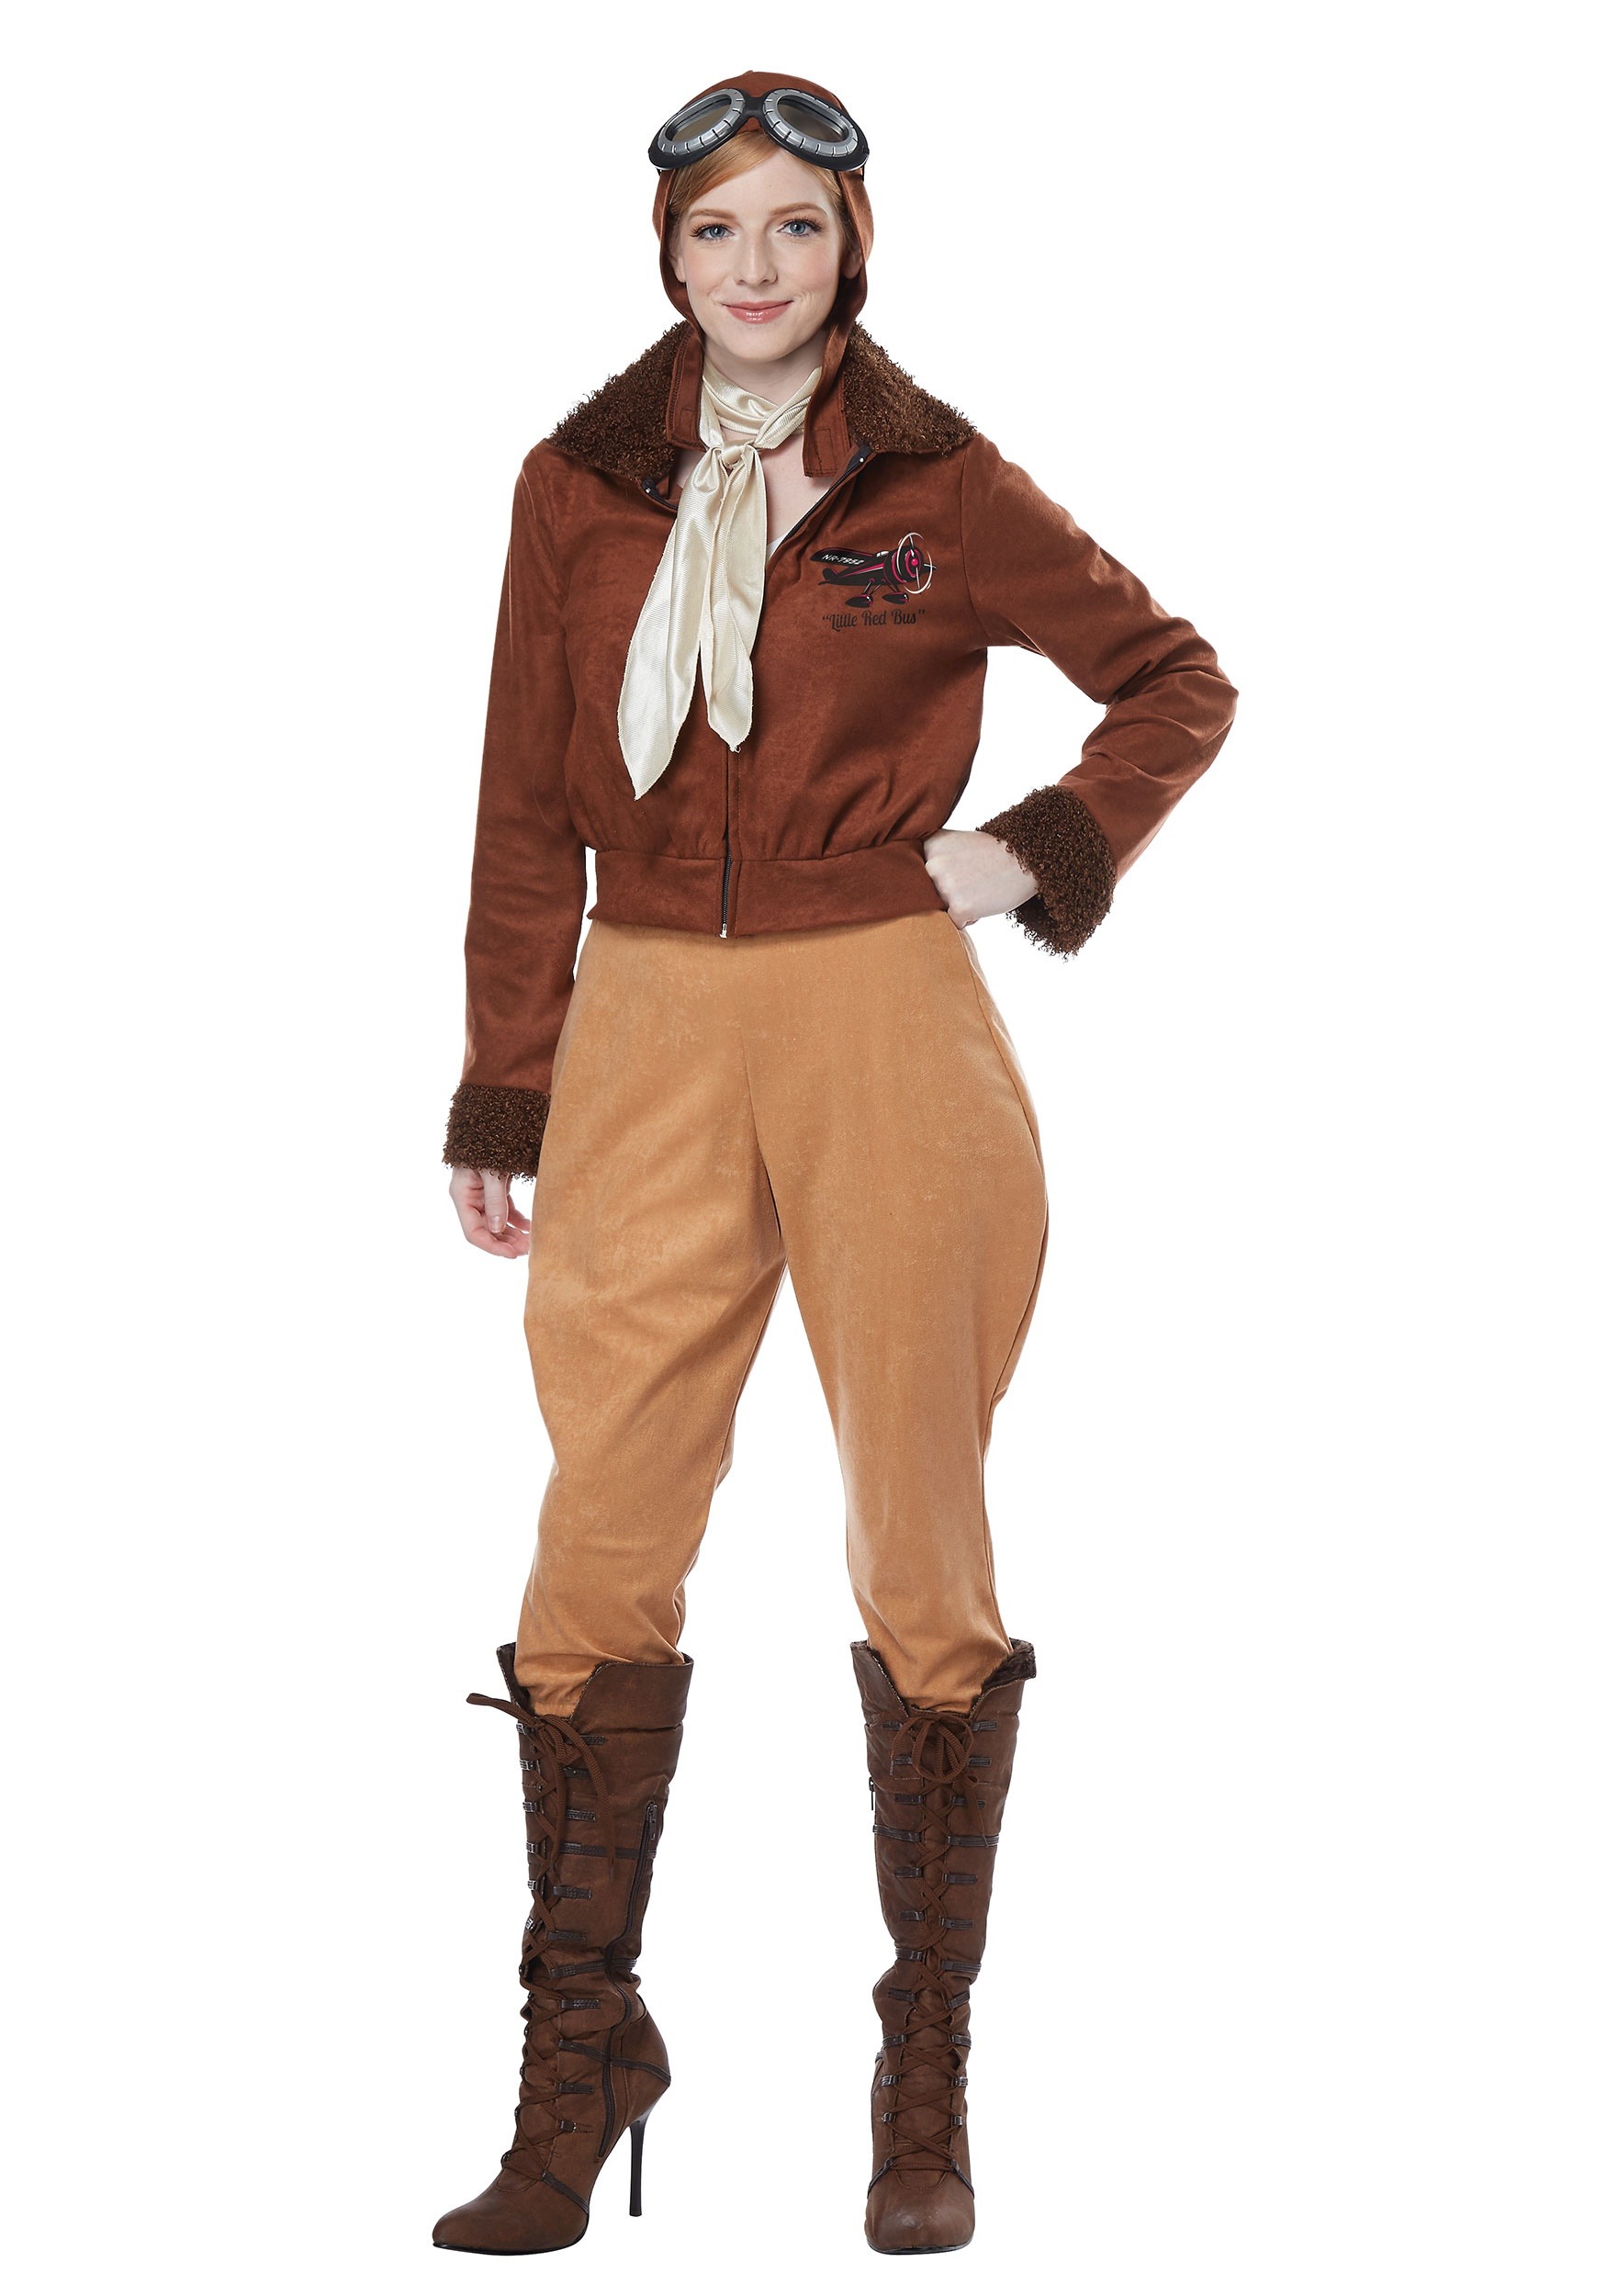 Amelia Earhart Women's Costume